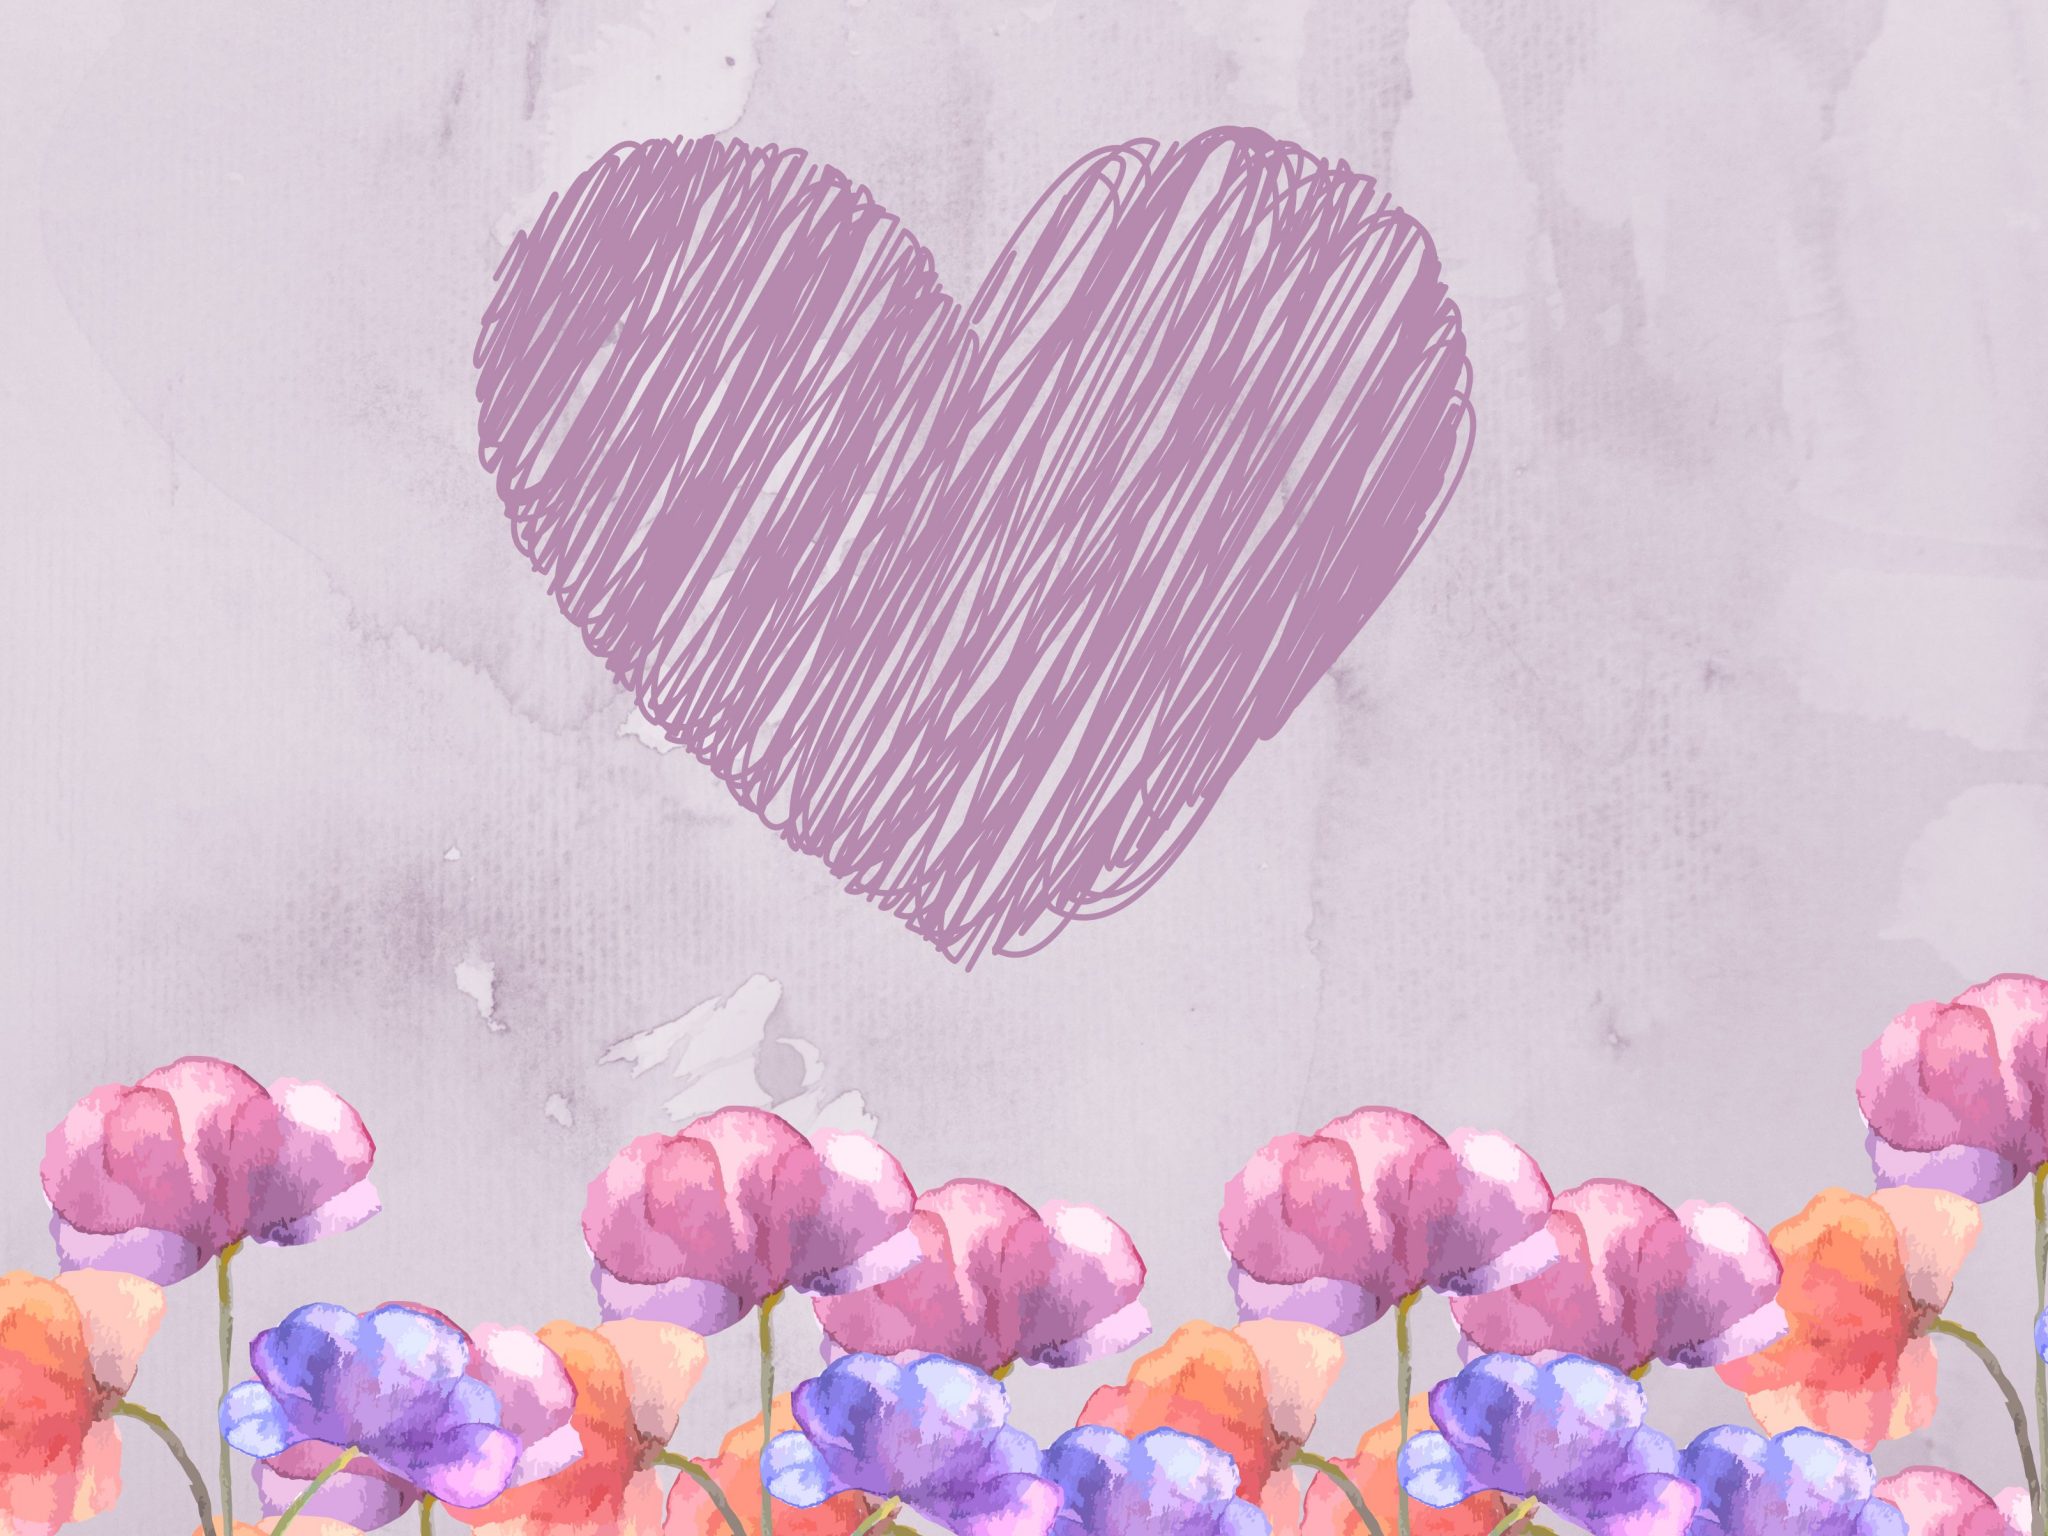 2048x1536 wallpaper Heart Floral Pastels Ipad Wallpaper 2048x1536 pixels resolution